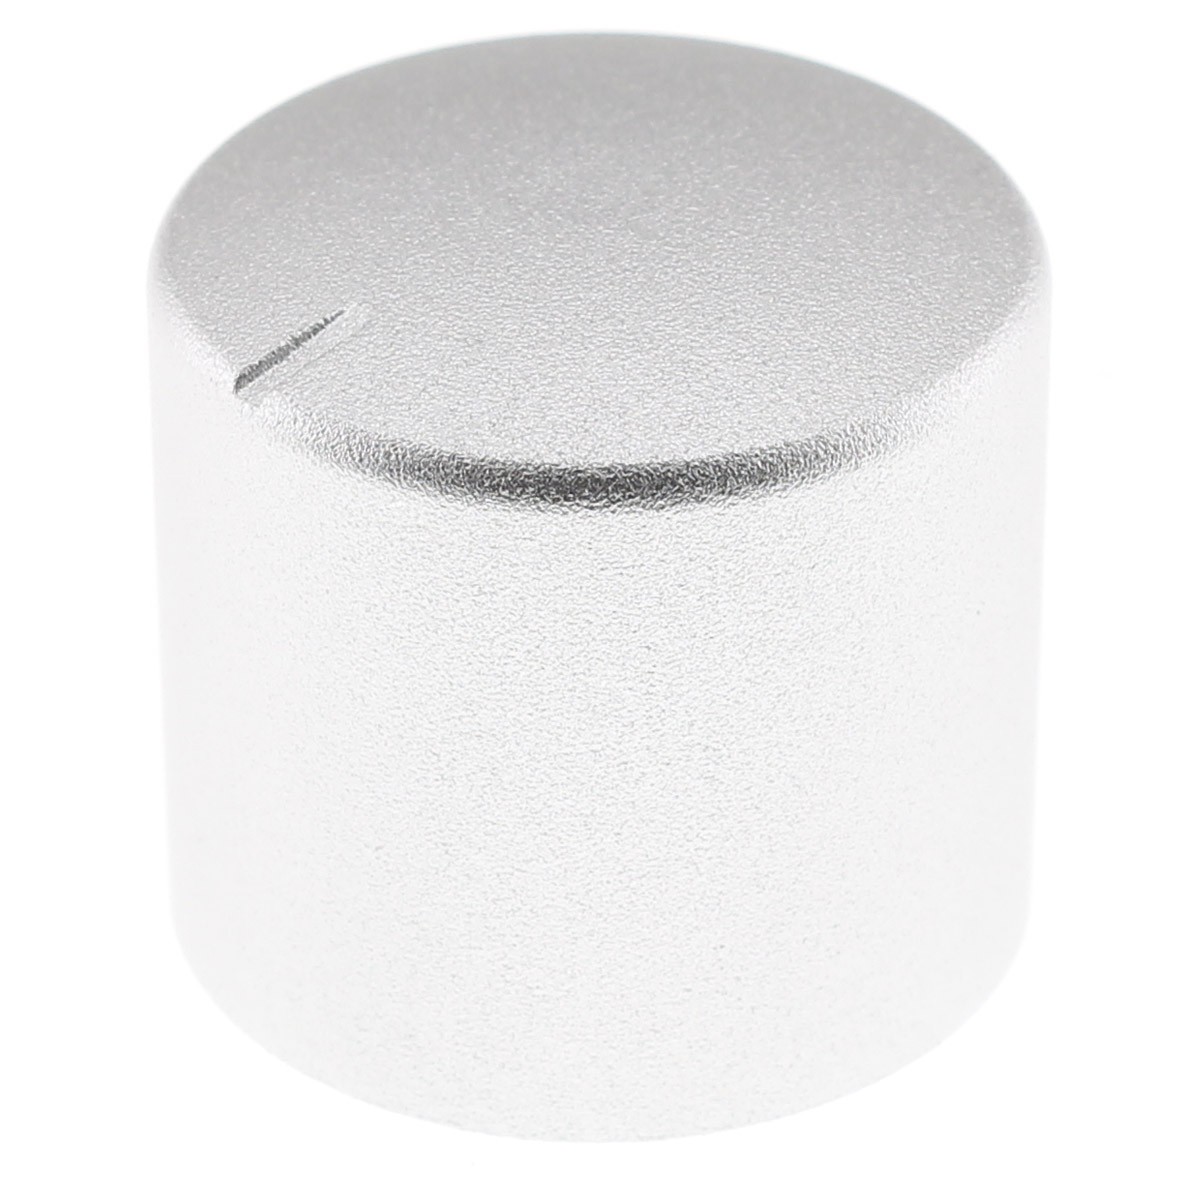 Aluminum Button 25mm Ø6mm Silver